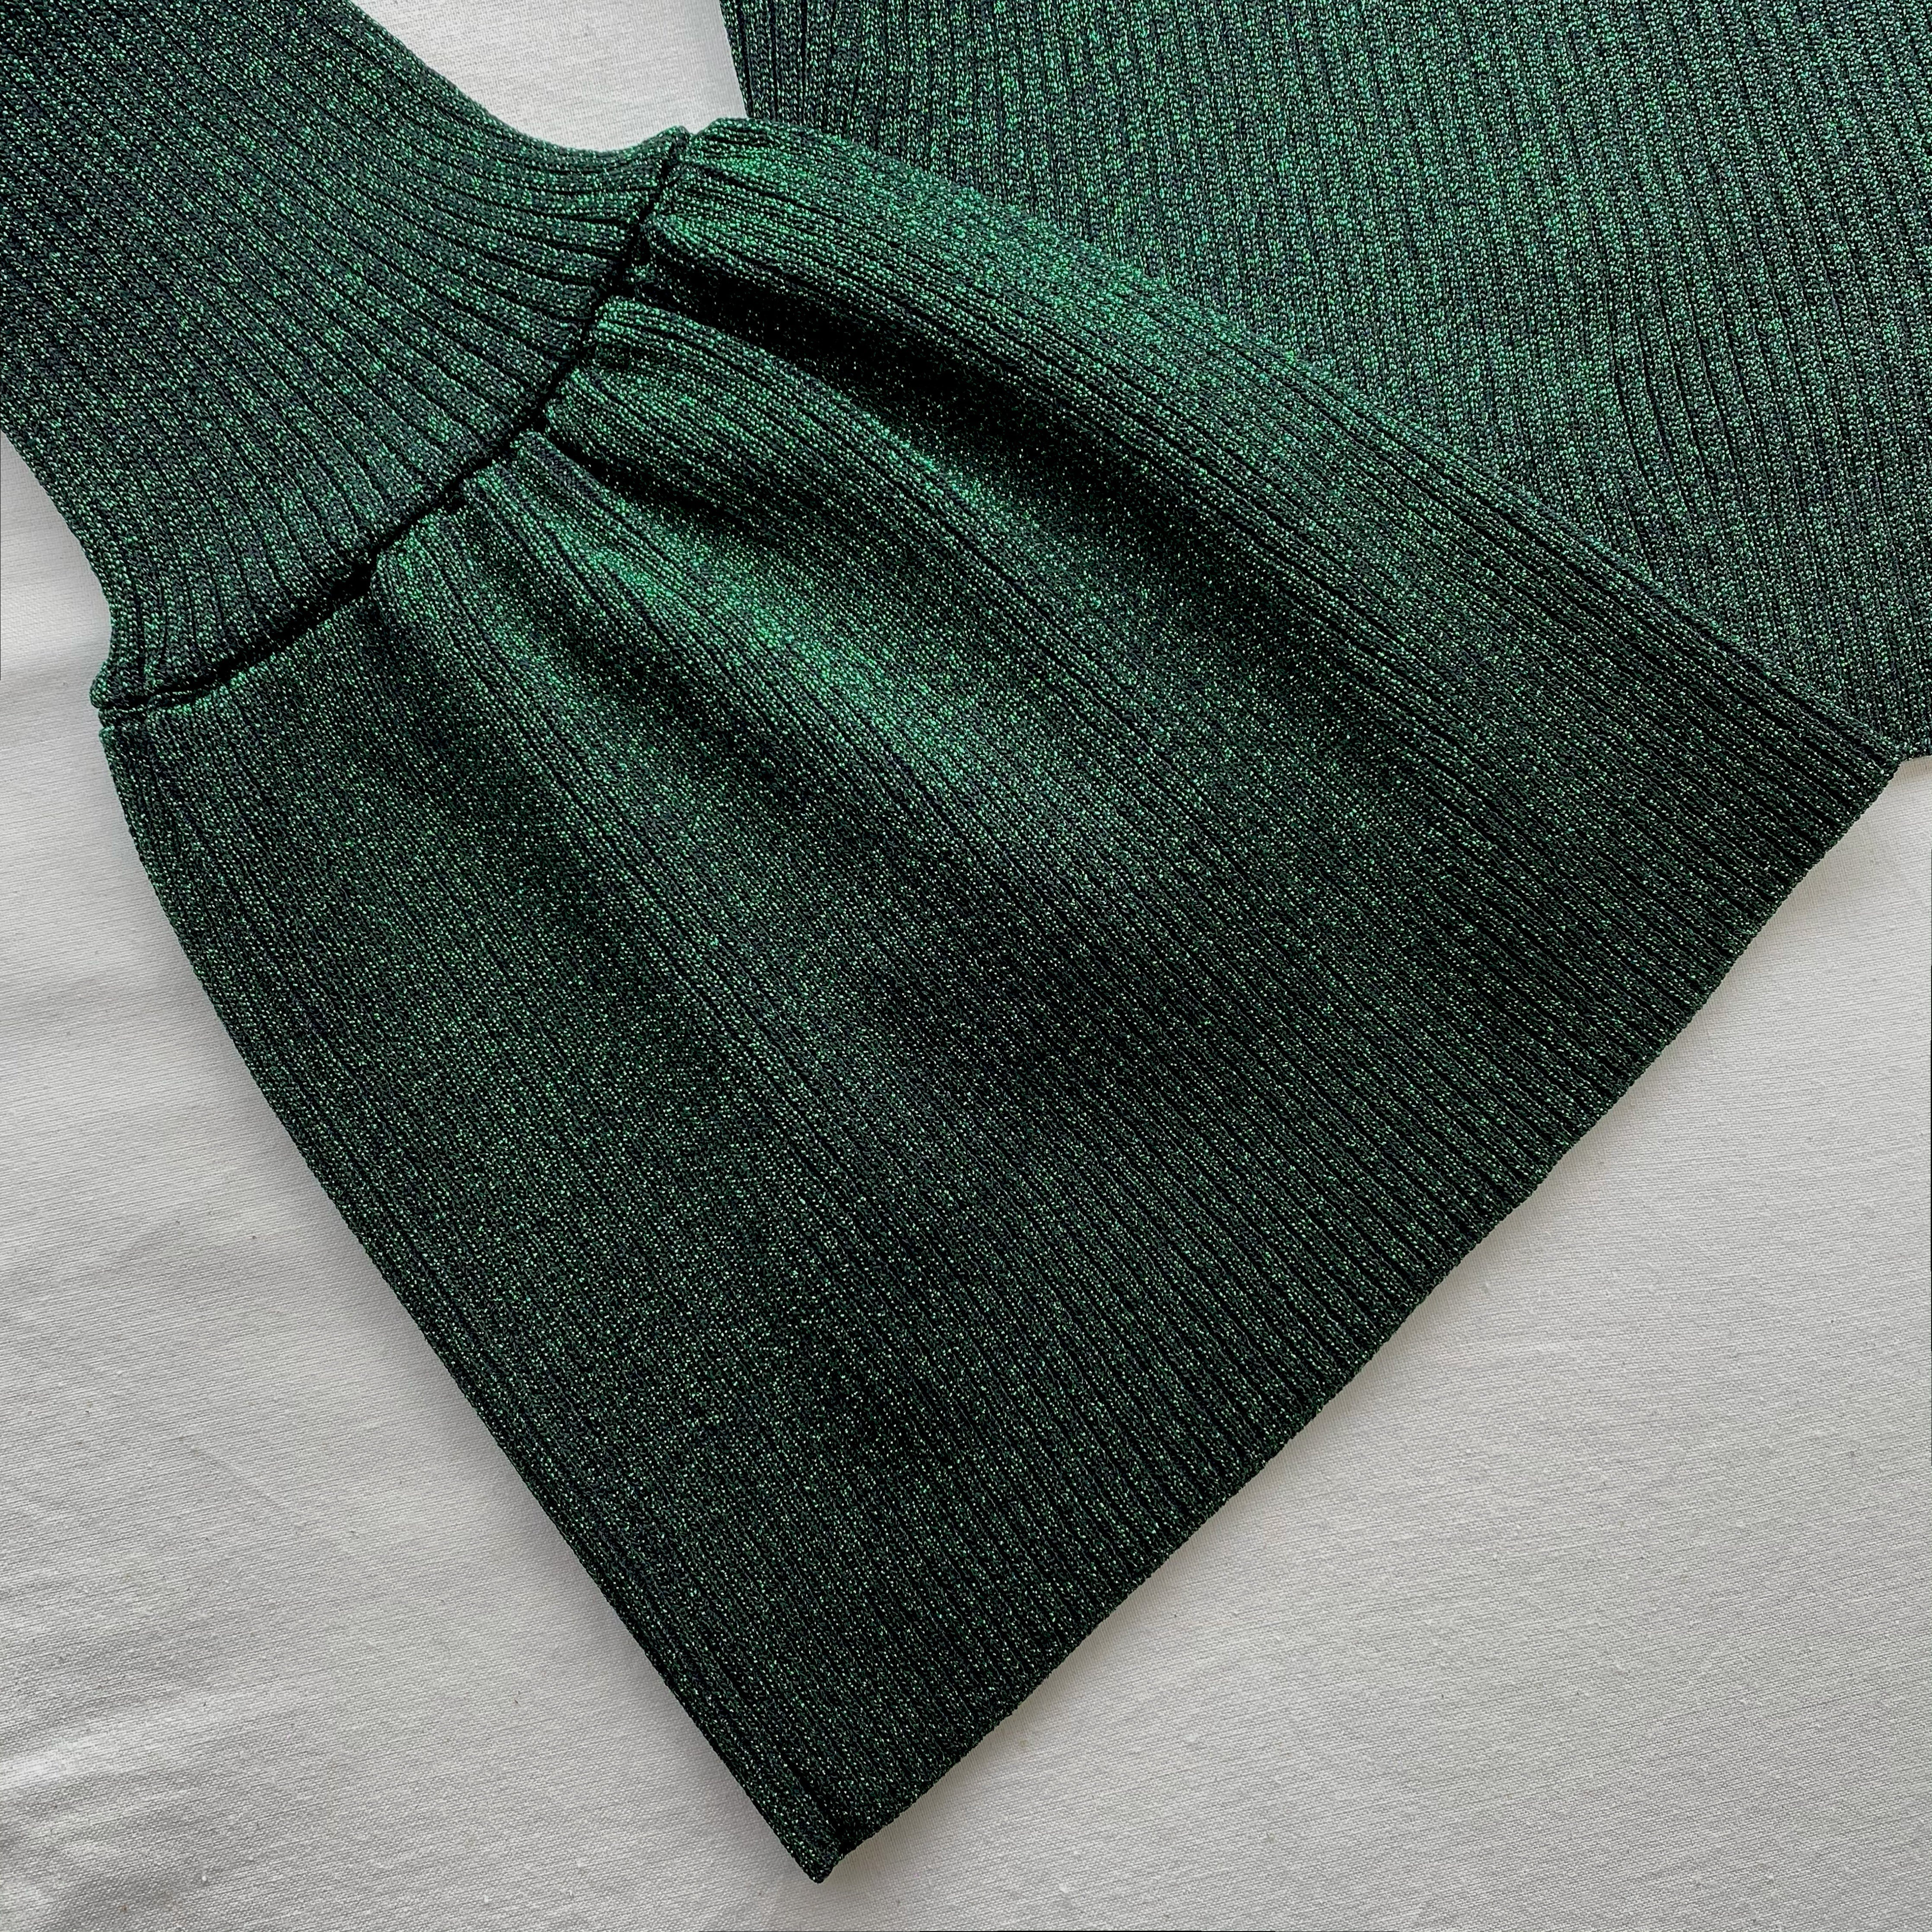 Green Lurex Knit Top - 5